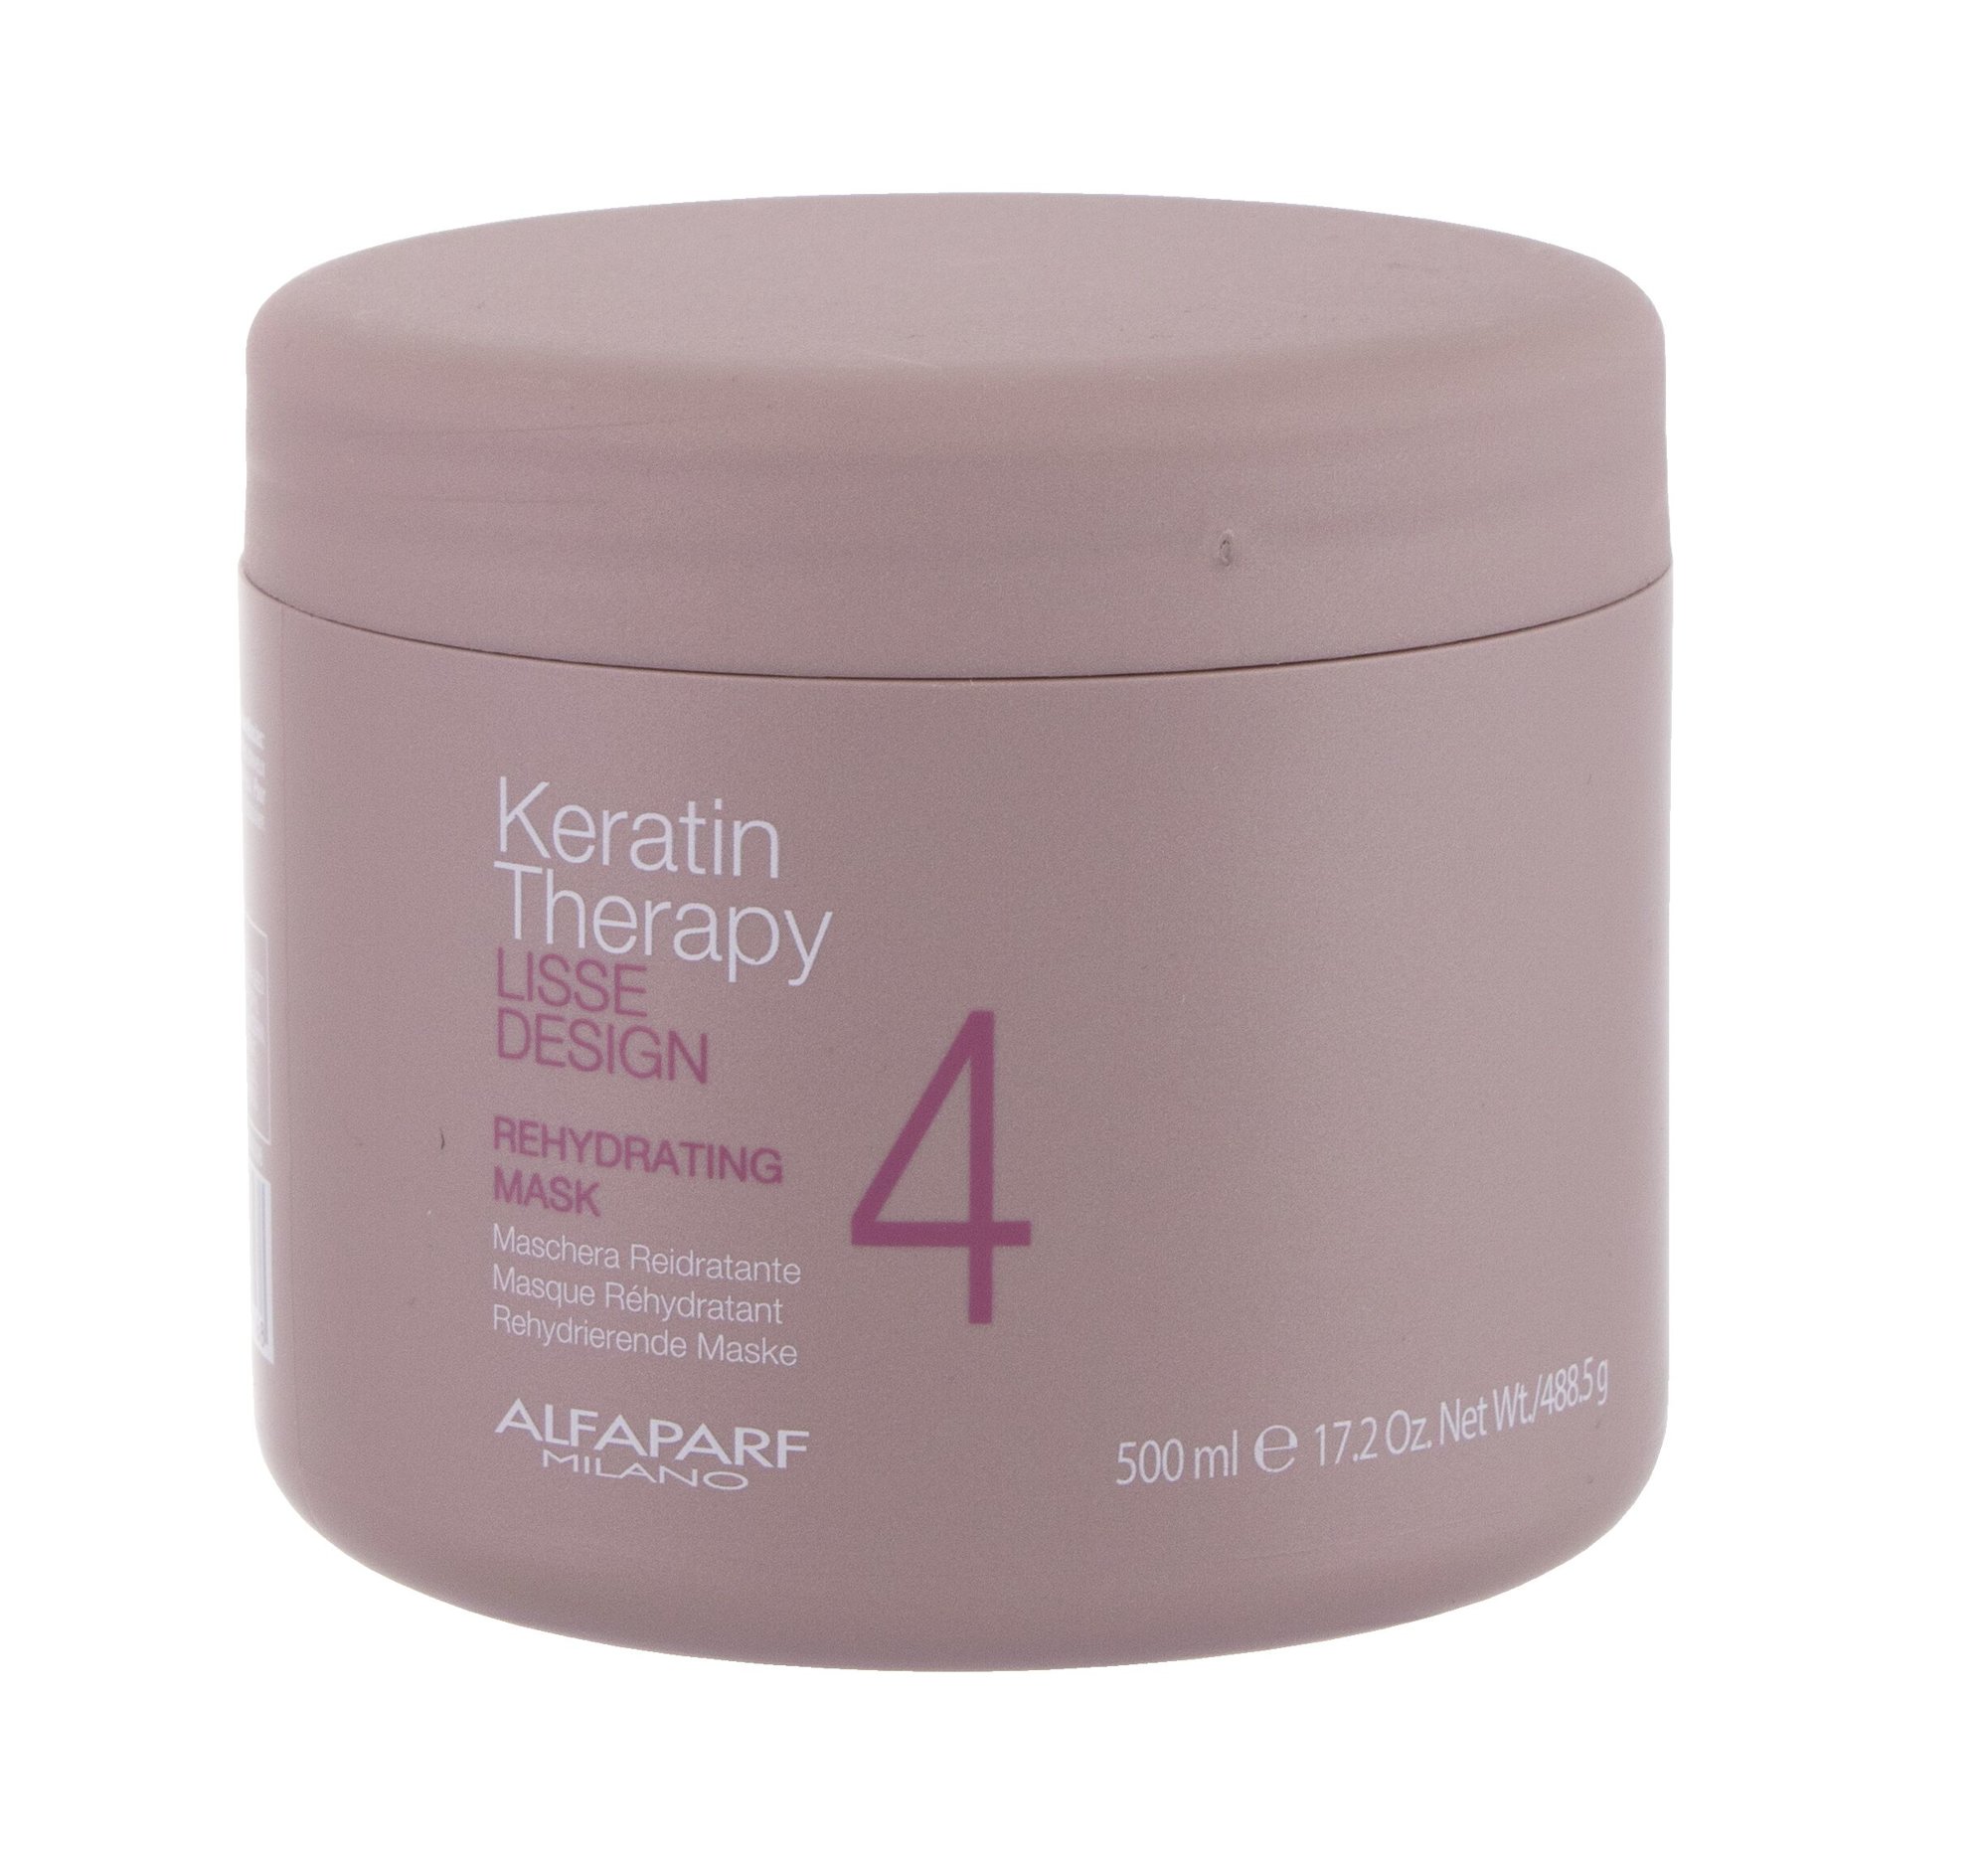 AlfaParf Milano Keratin Therapy Lisse Design Rehydrating 500ml plaukų kaukė (Pažeista pakuotė)